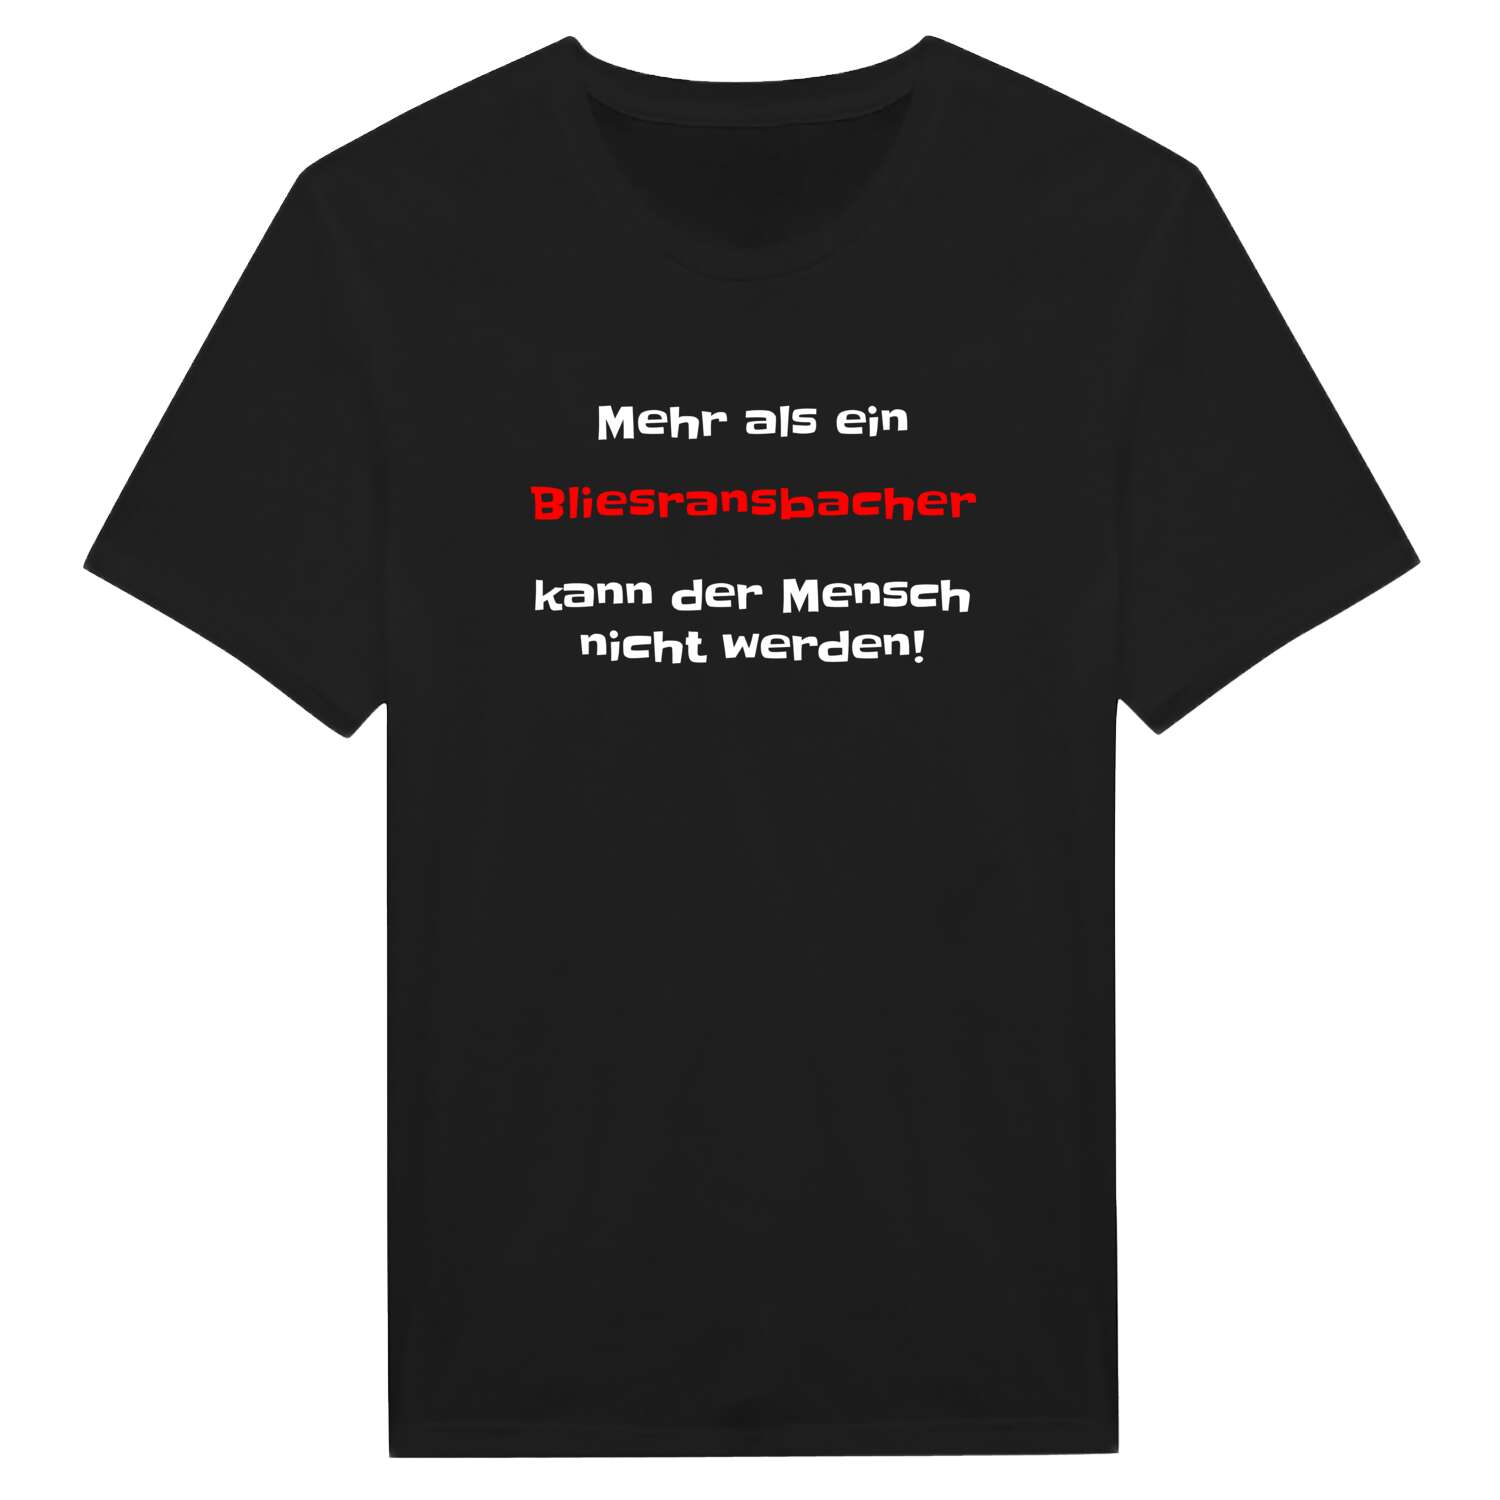 Bliesransbach T-Shirt »Mehr als ein«